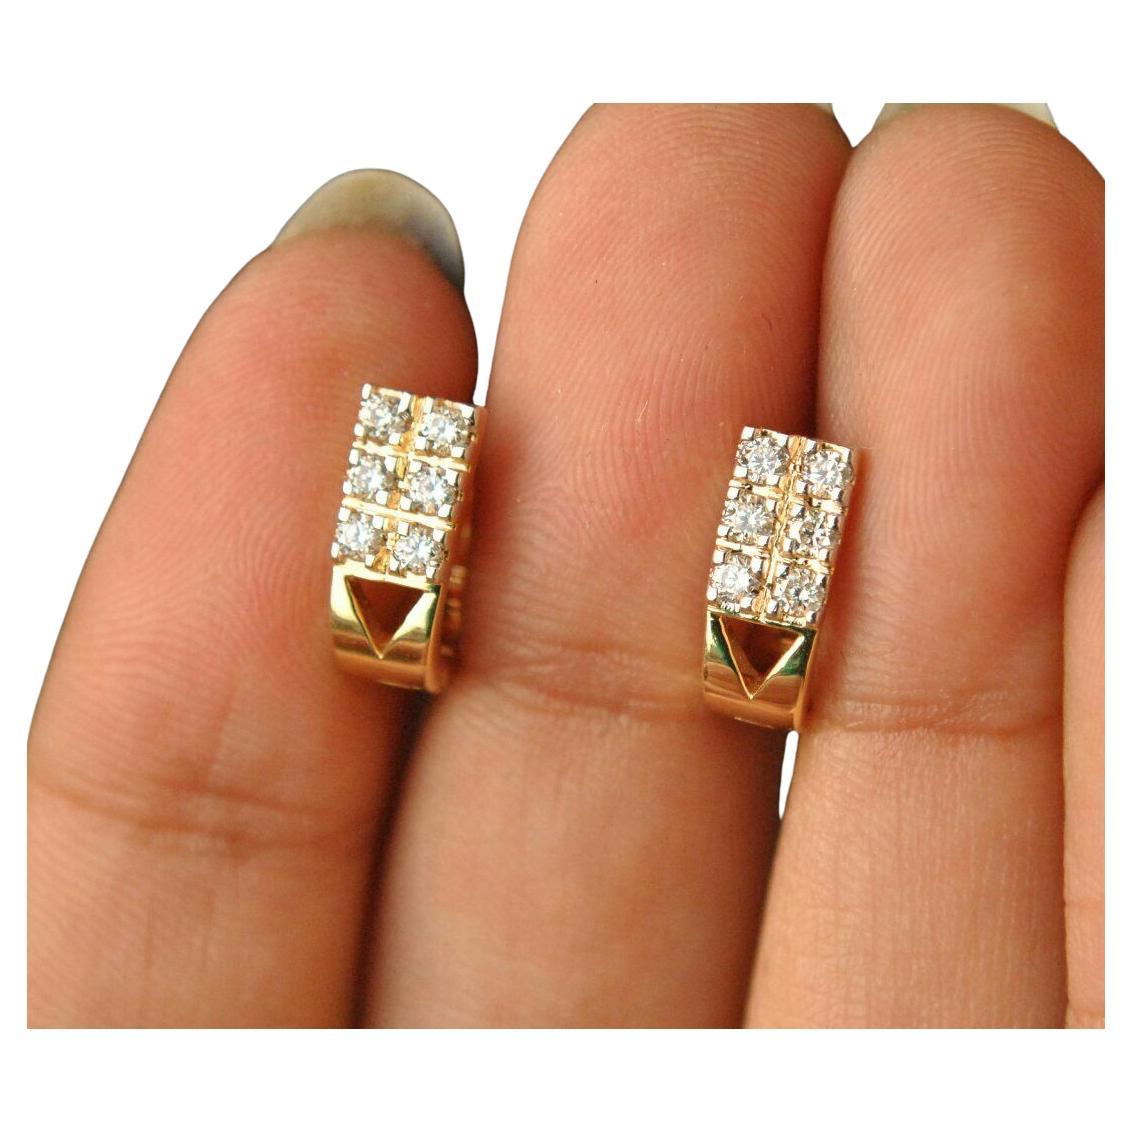 Boucles d'oreilles Diamond Huggie en or jaune 14K en forme de U, petites boucles d'oreilles à cliquet, cadeau d'été.